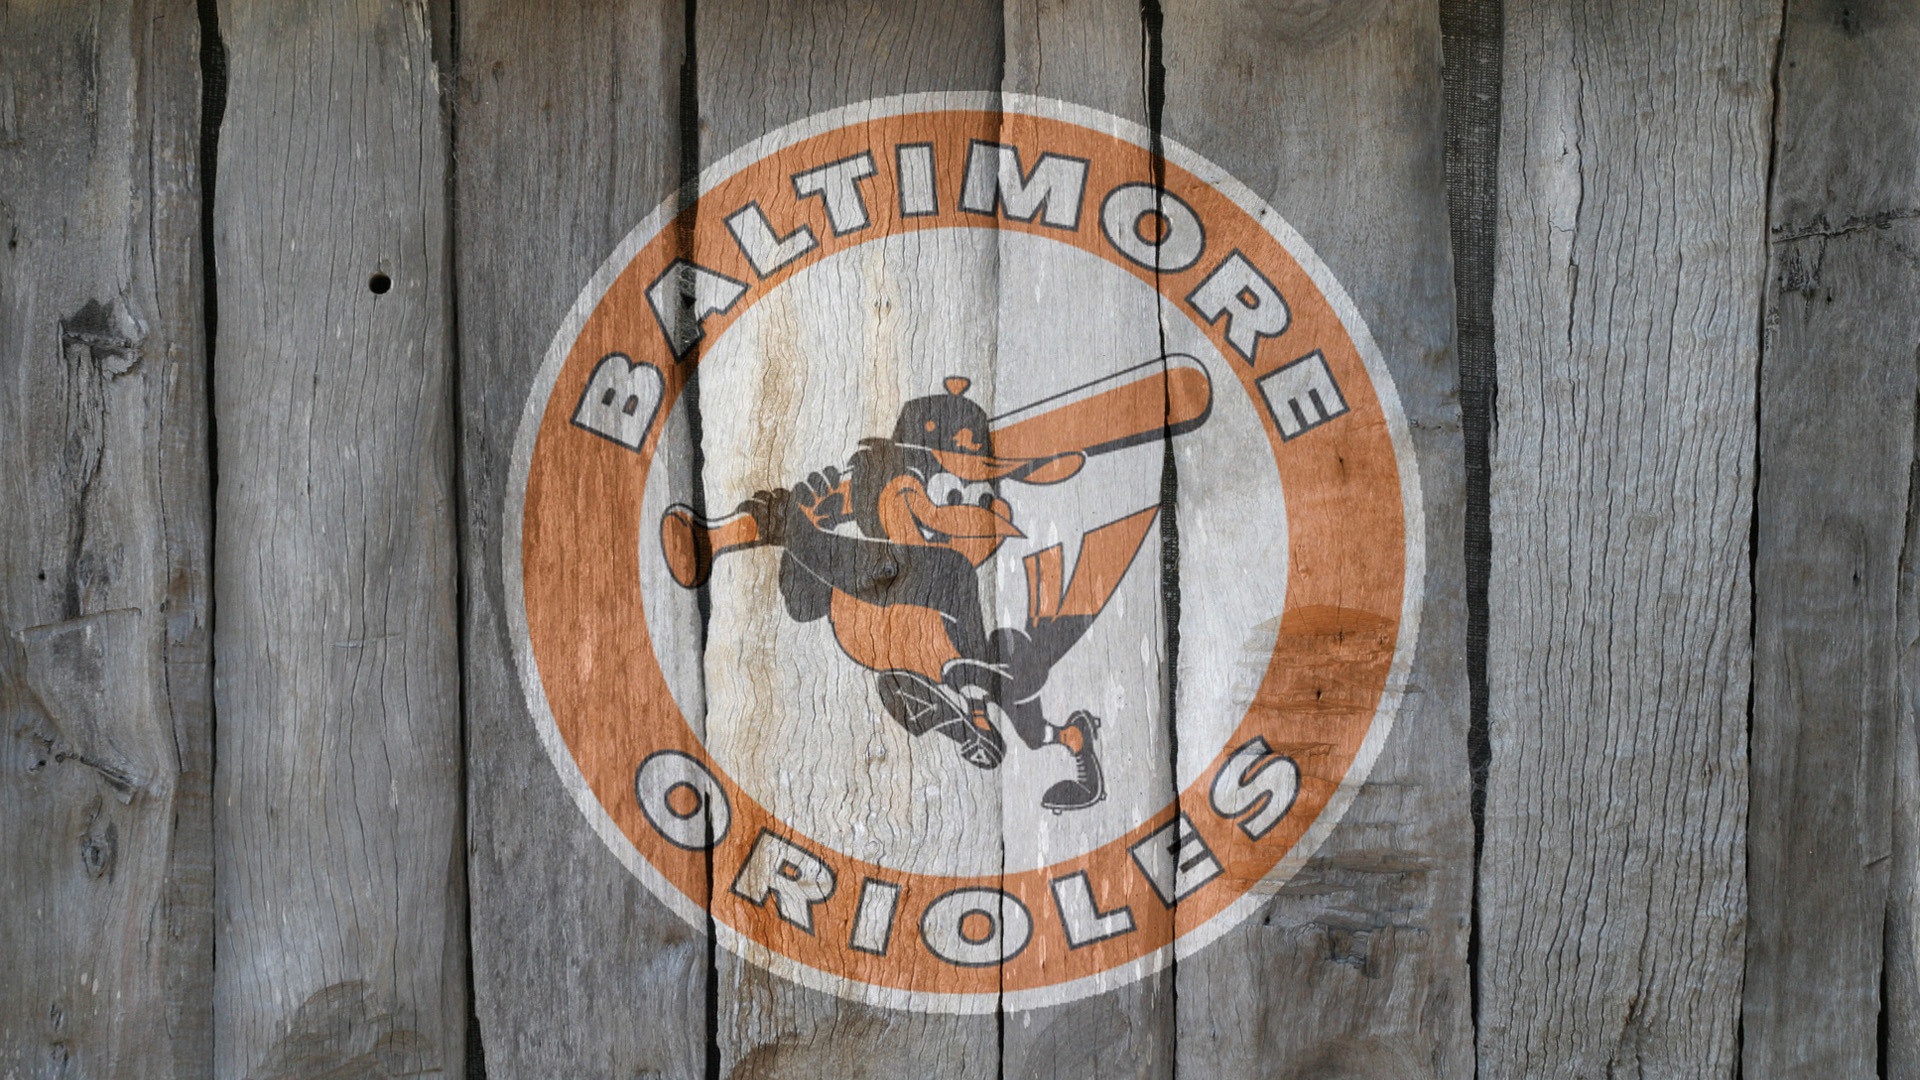 Baltimore Orioles  Orioles wallpaper Baltimore orioles  wallpaper Baltimore orioles